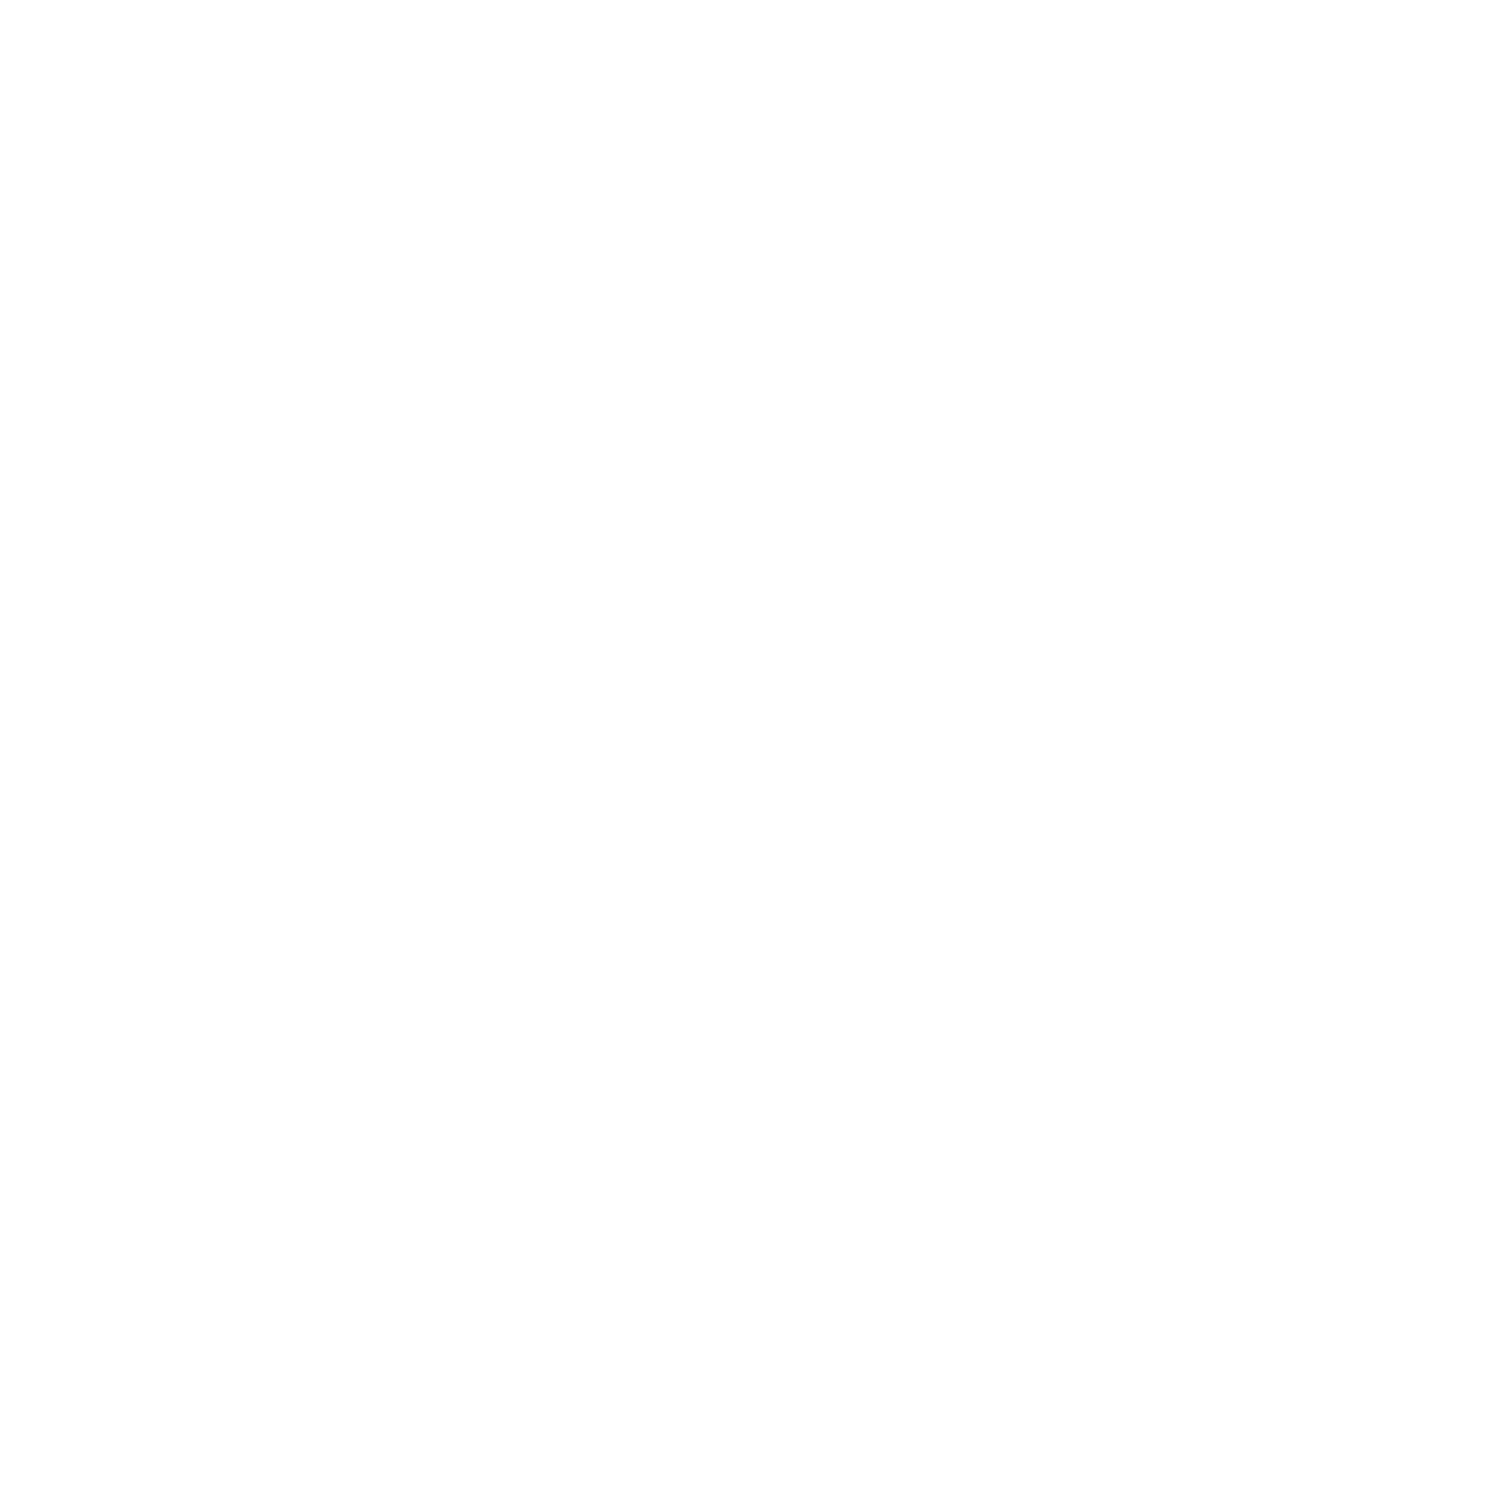 Eves of Destruction